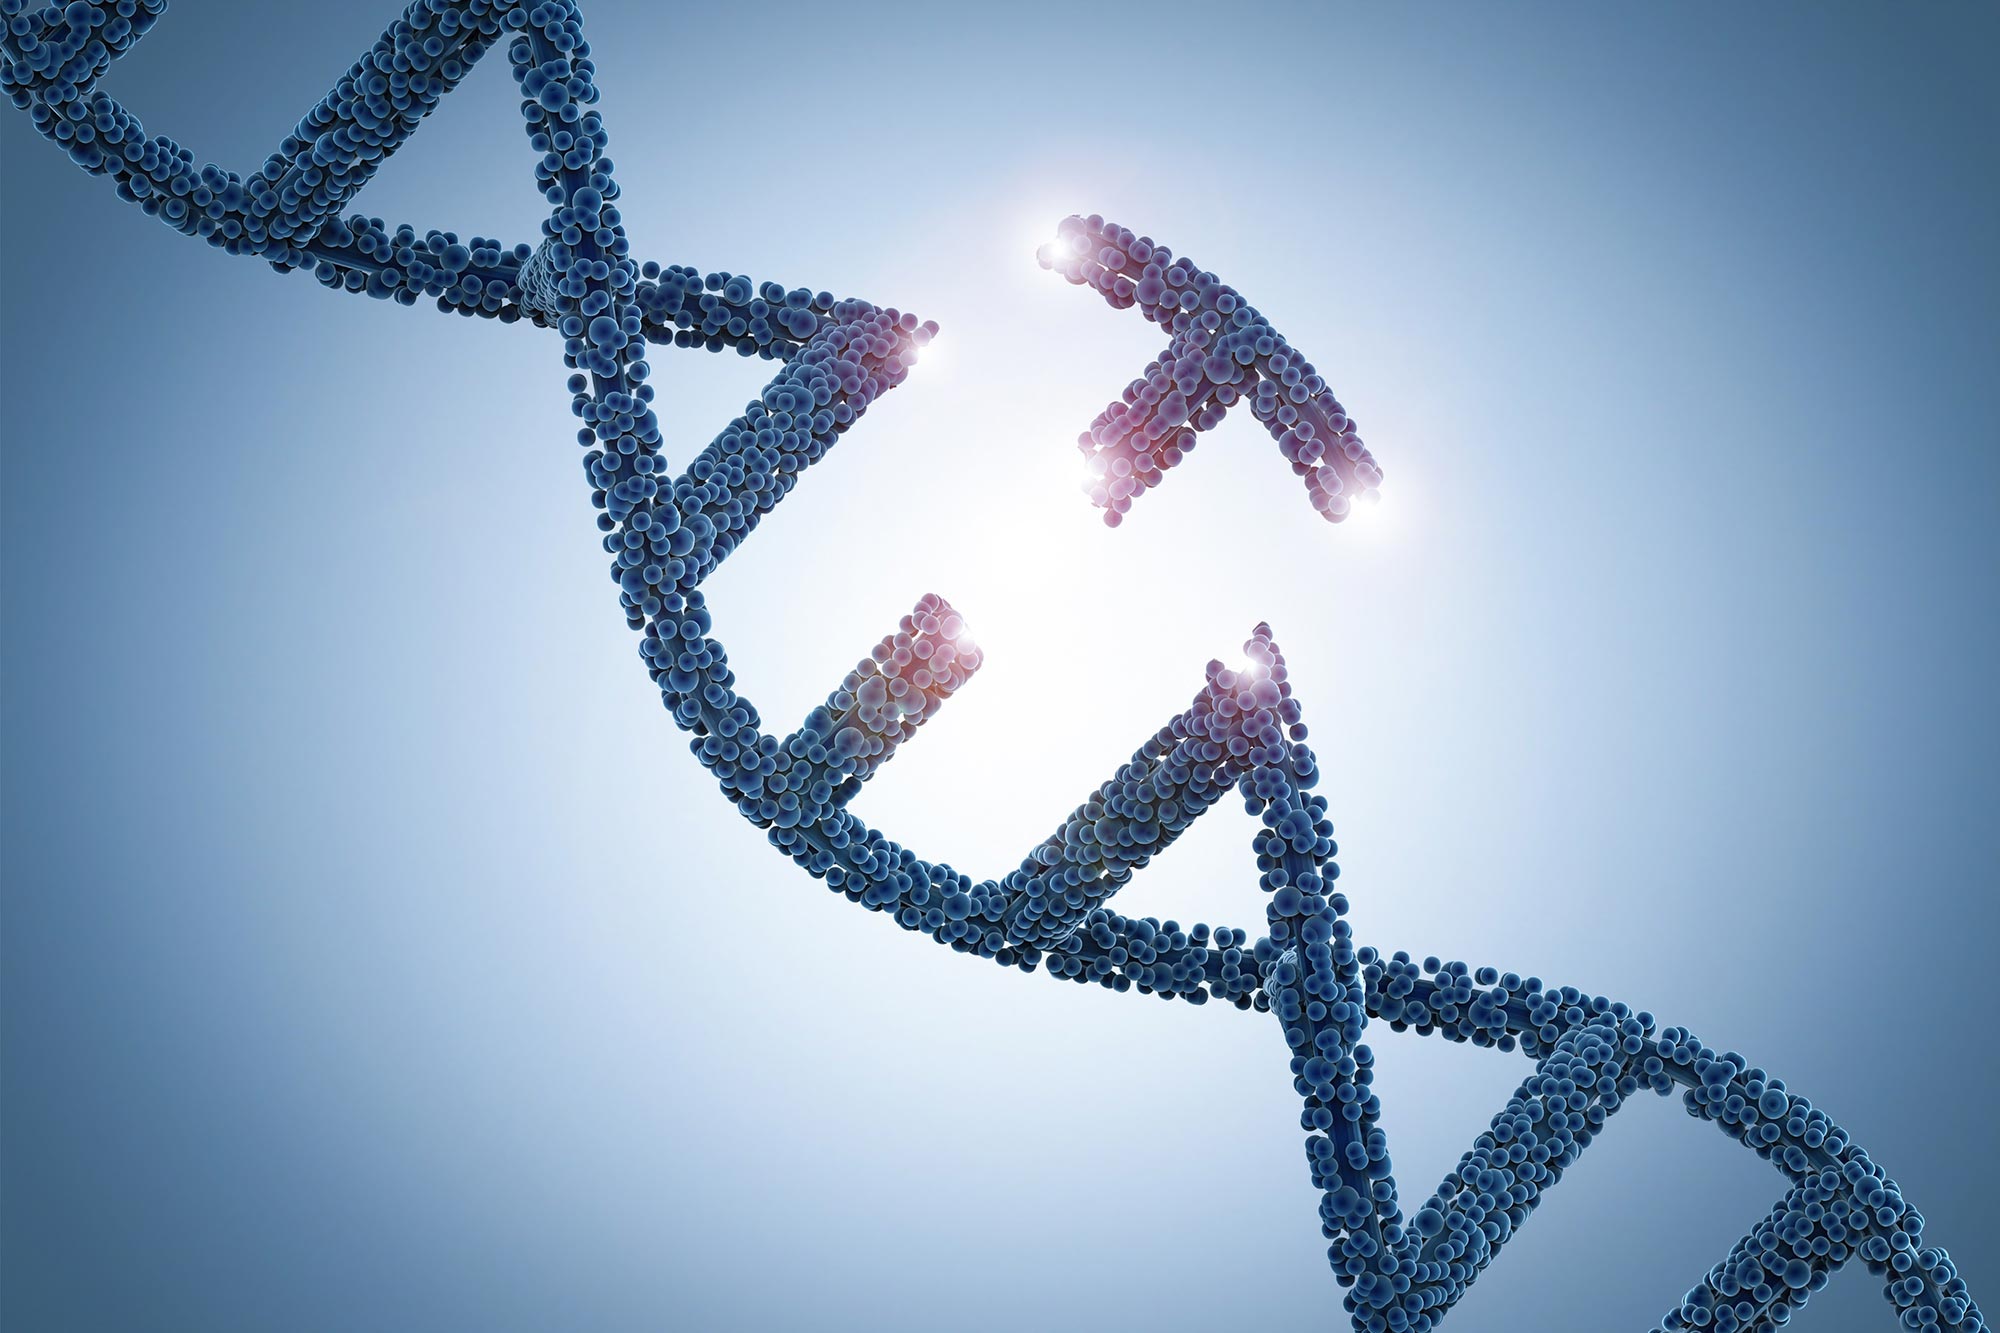 La inserción completa de genes ahora es posible en células humanas